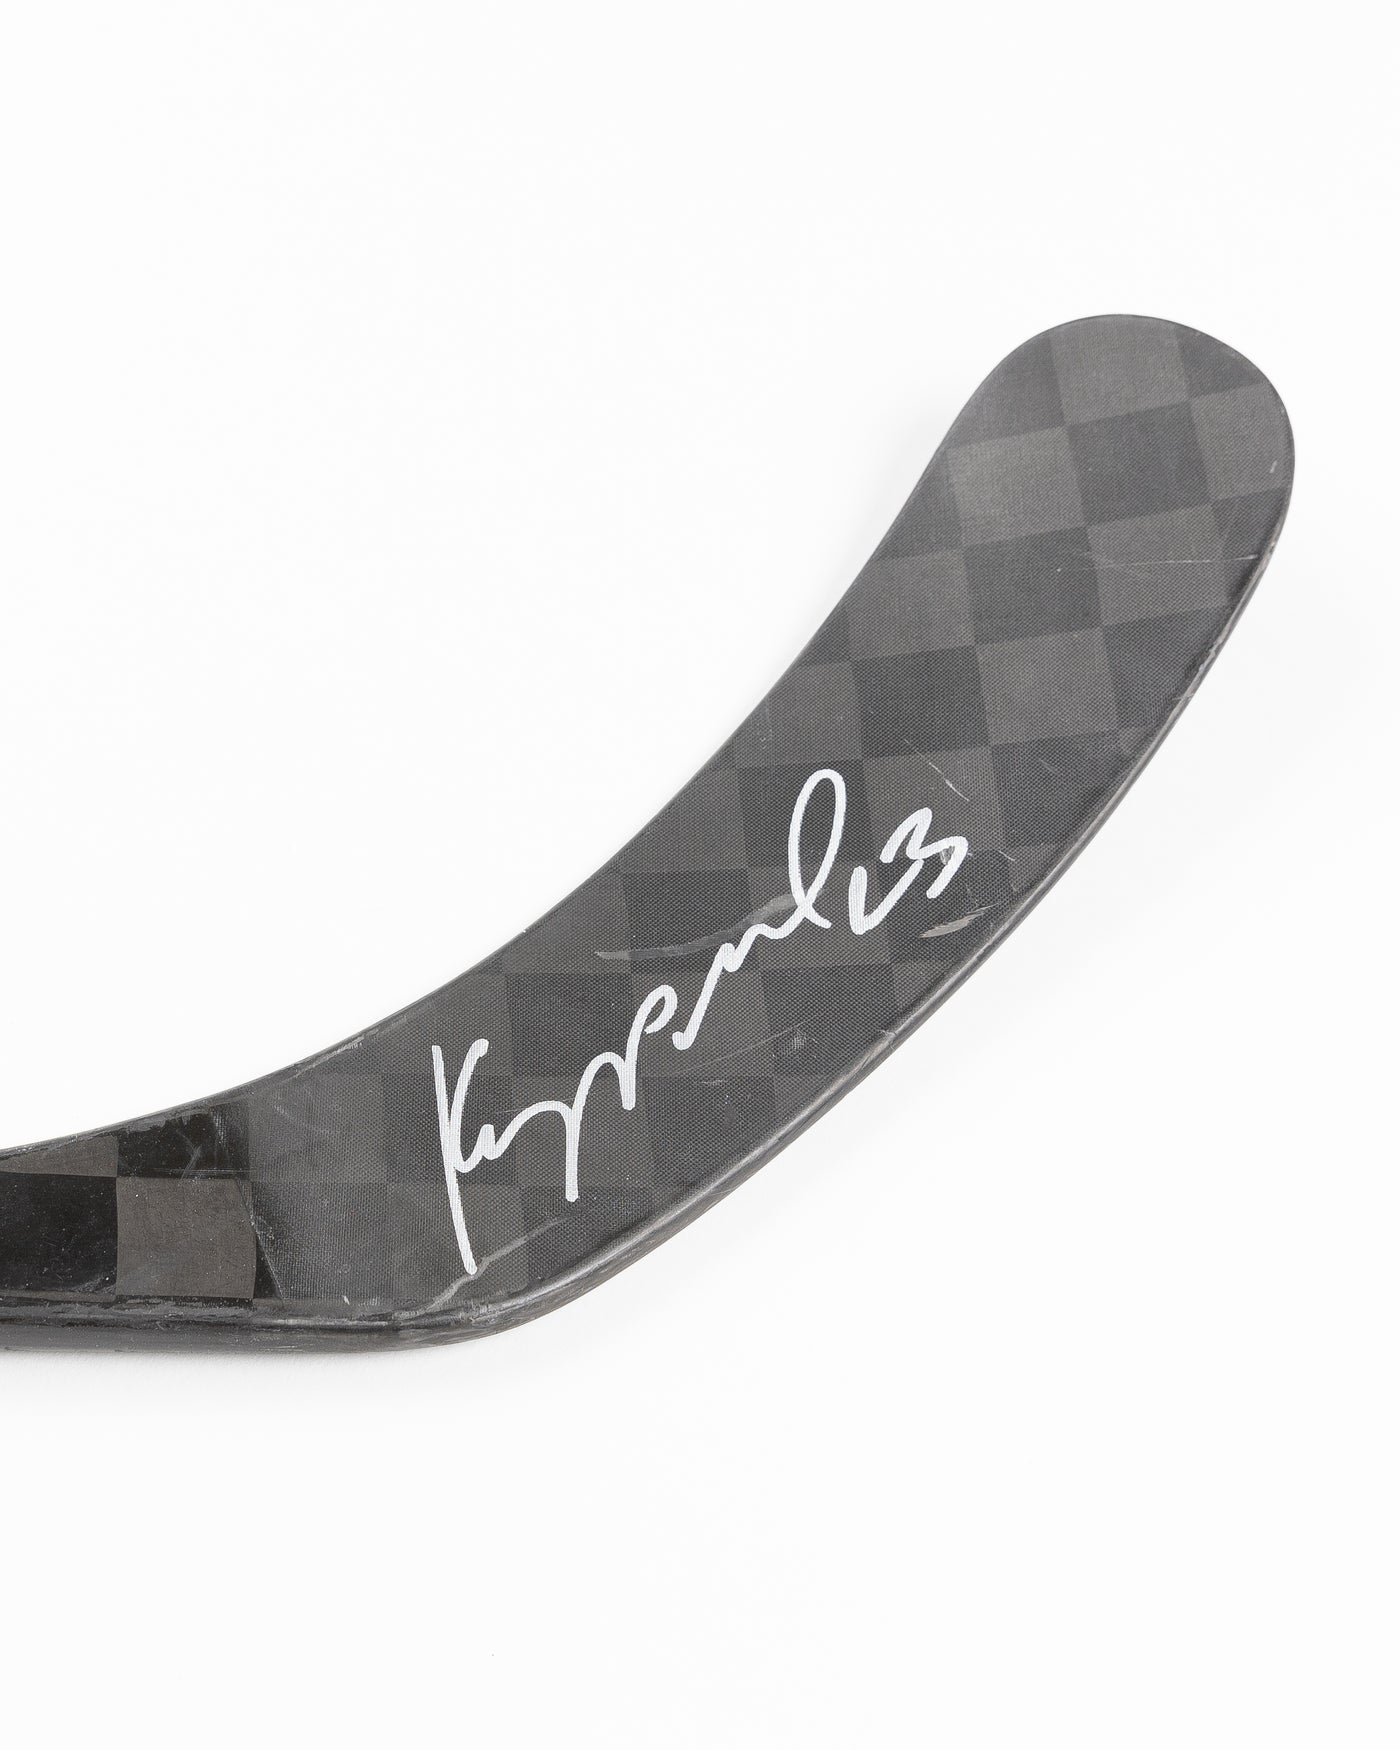 signed and game used Chicago Blackhawks Philipp Kurashev hockey stick - detail lay flat